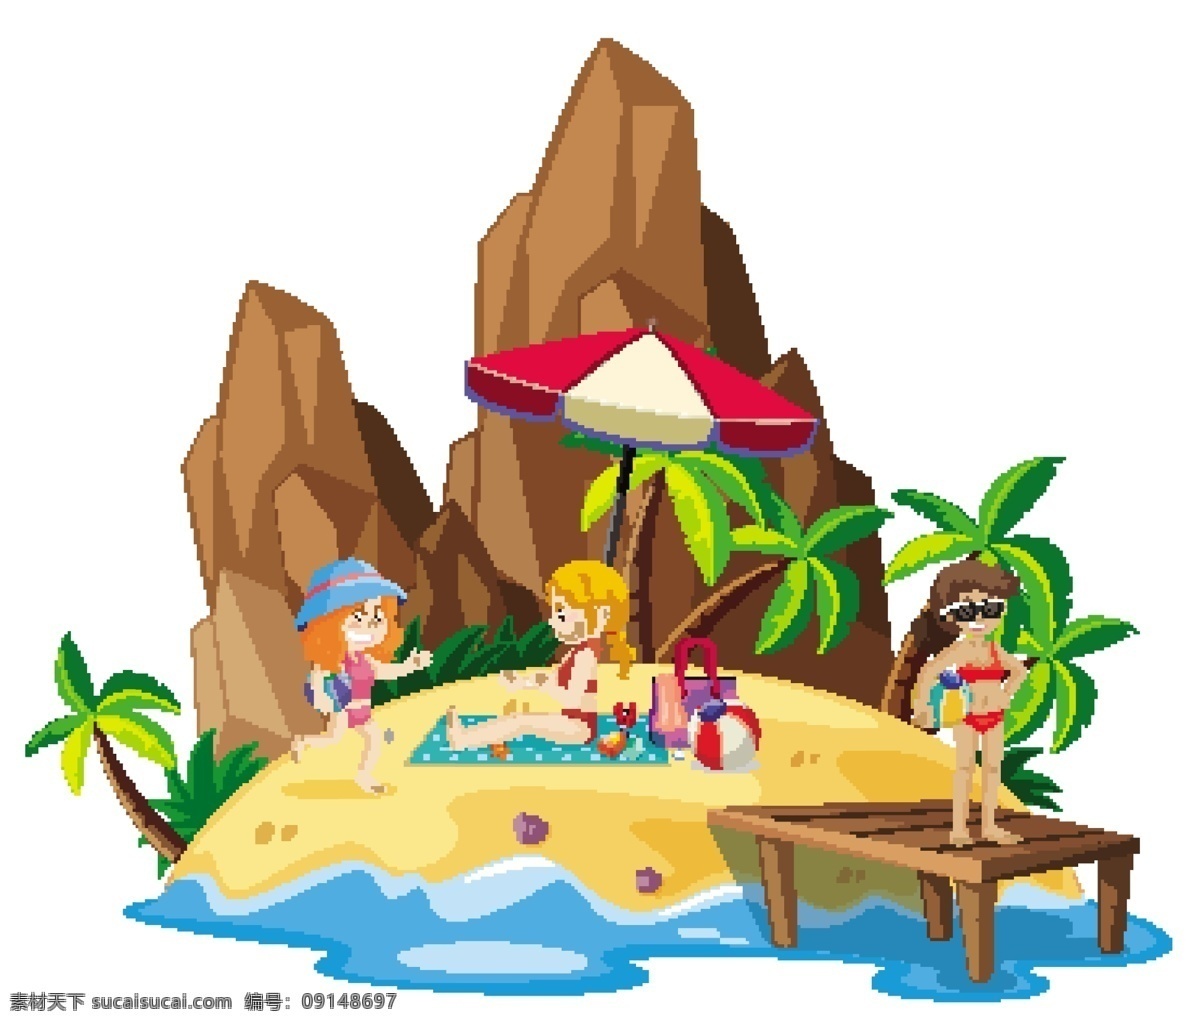 卡通 夏天 儿童 卡通夏天儿童 快乐 生活 儿童素材 漫画 小孩 度假 沙滩 游玩 海水 蓝天 假日 旅游 游 夏天背景 卡通设计